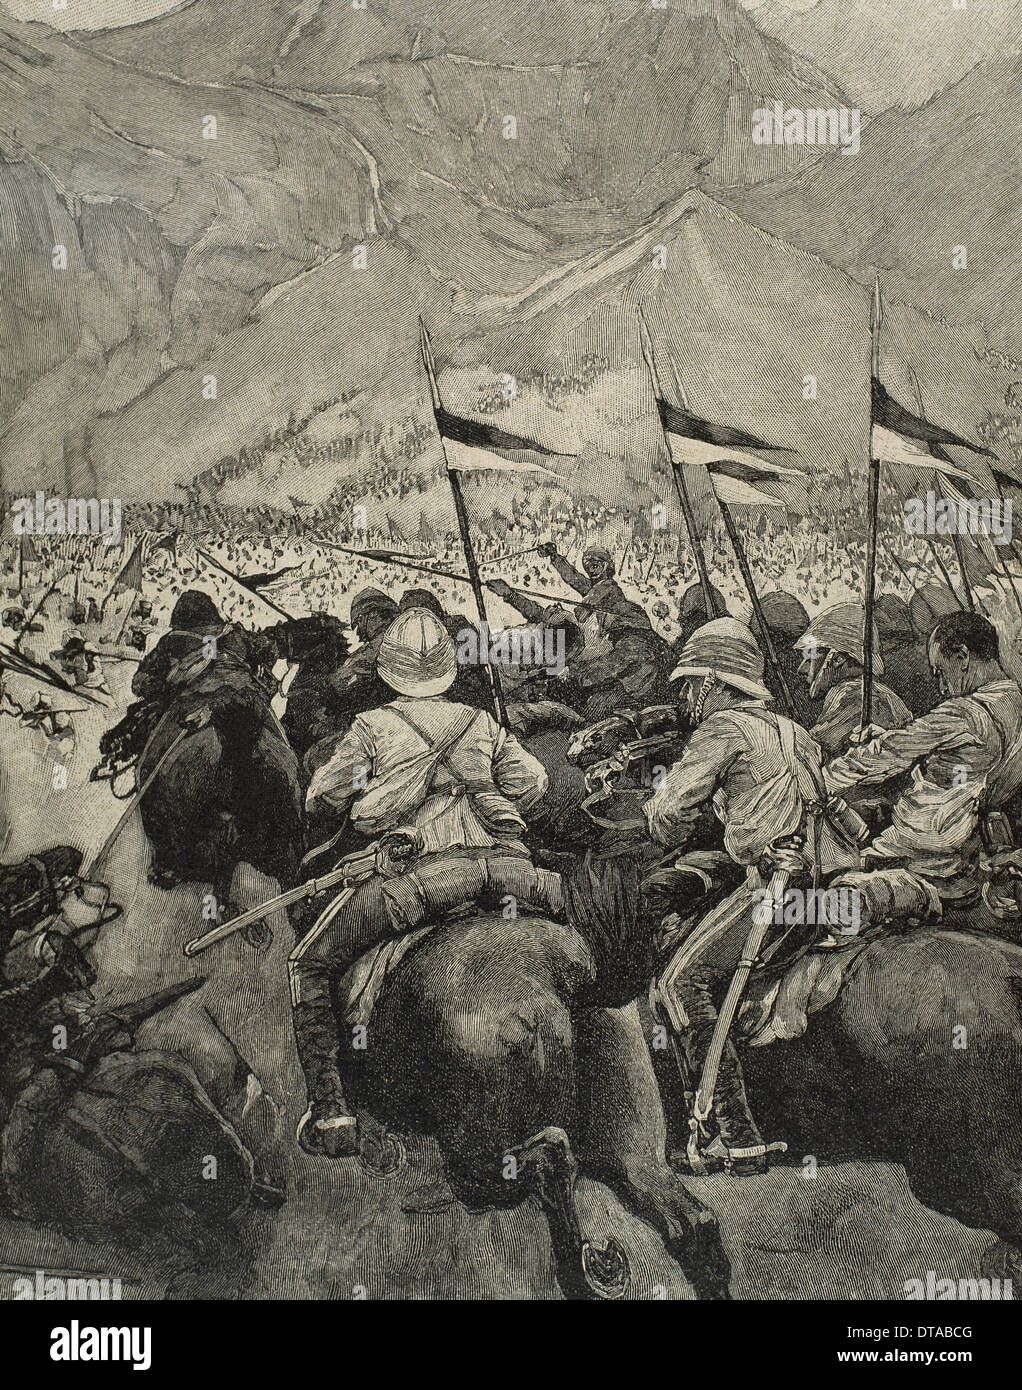 L'Afrique. Le colonialisme. La charge de la cavalerie anglaise. Dans la Péninsule Ibérique gravure Illustration, 1898. Banque D'Images